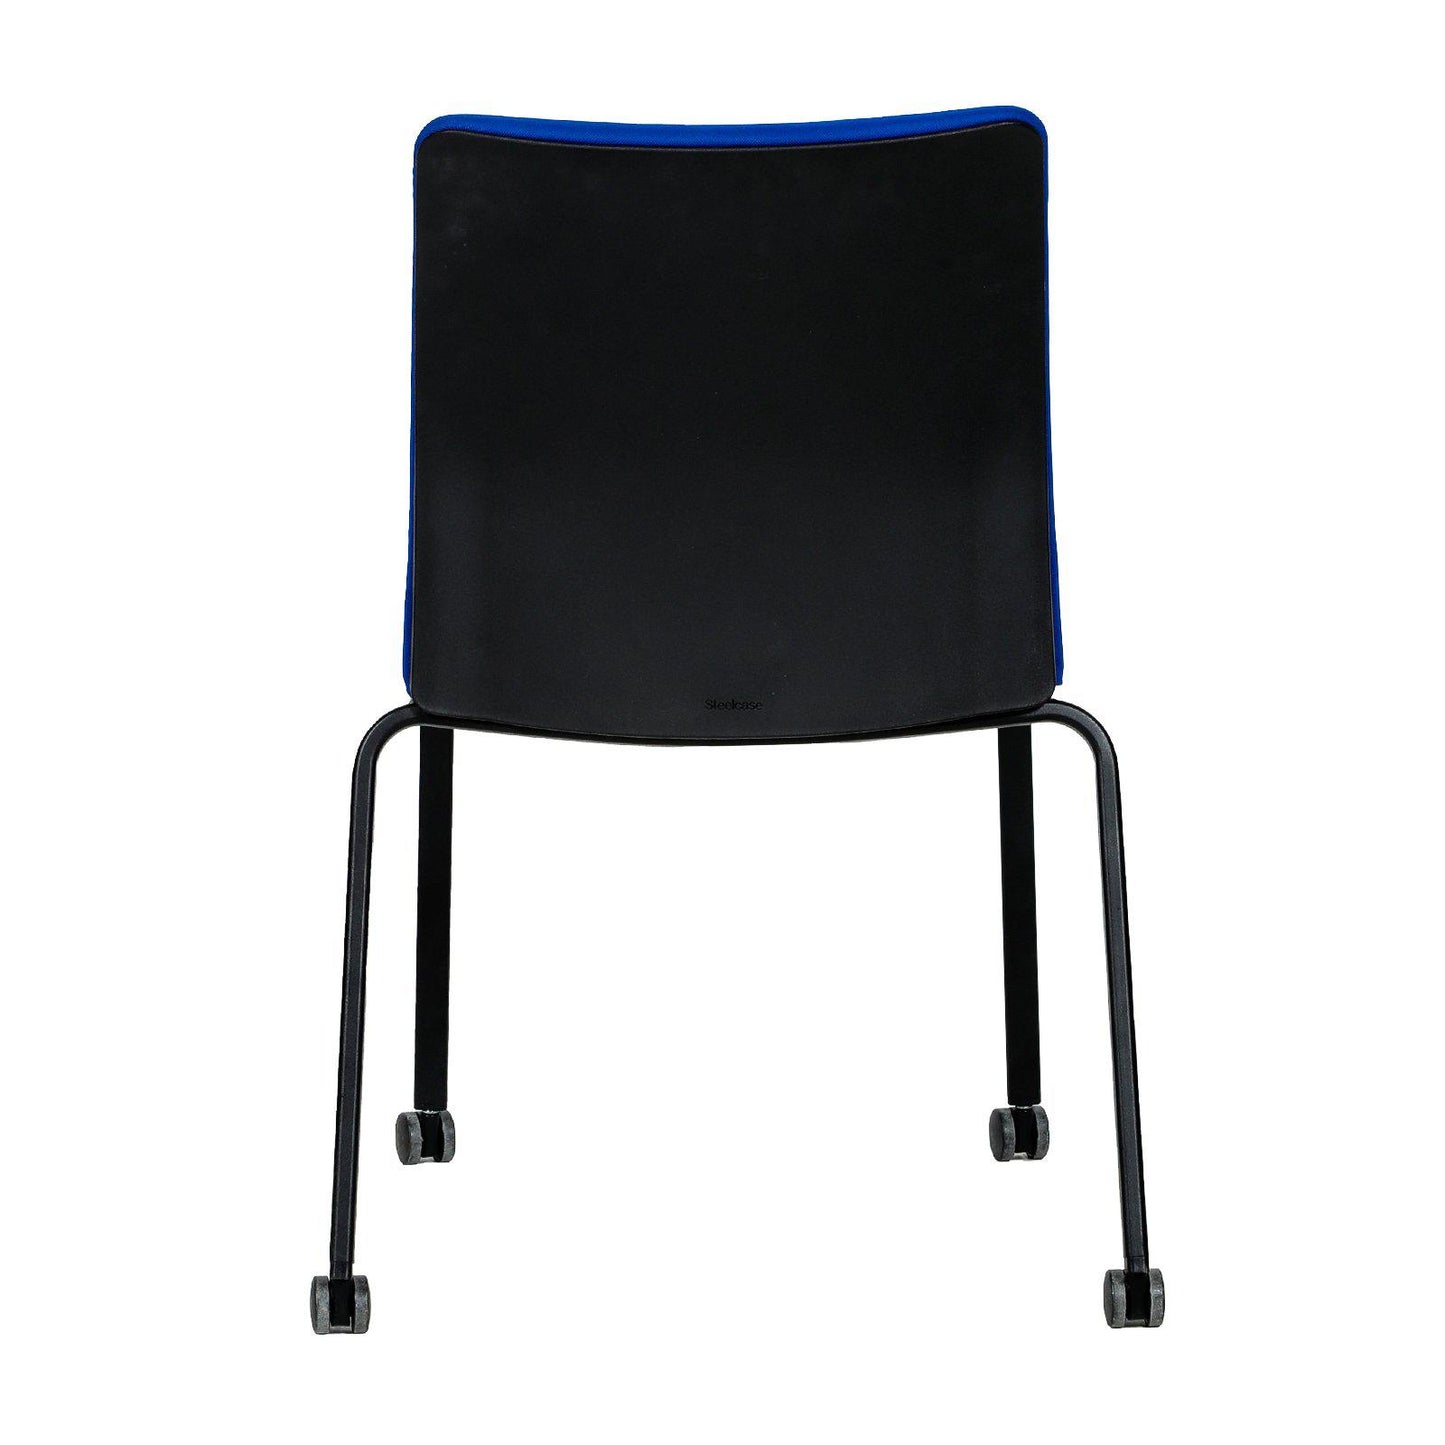 Chaise de réunion Steelcase occasion - Bleu - 48 x 40 x 92cm-Bluedigo